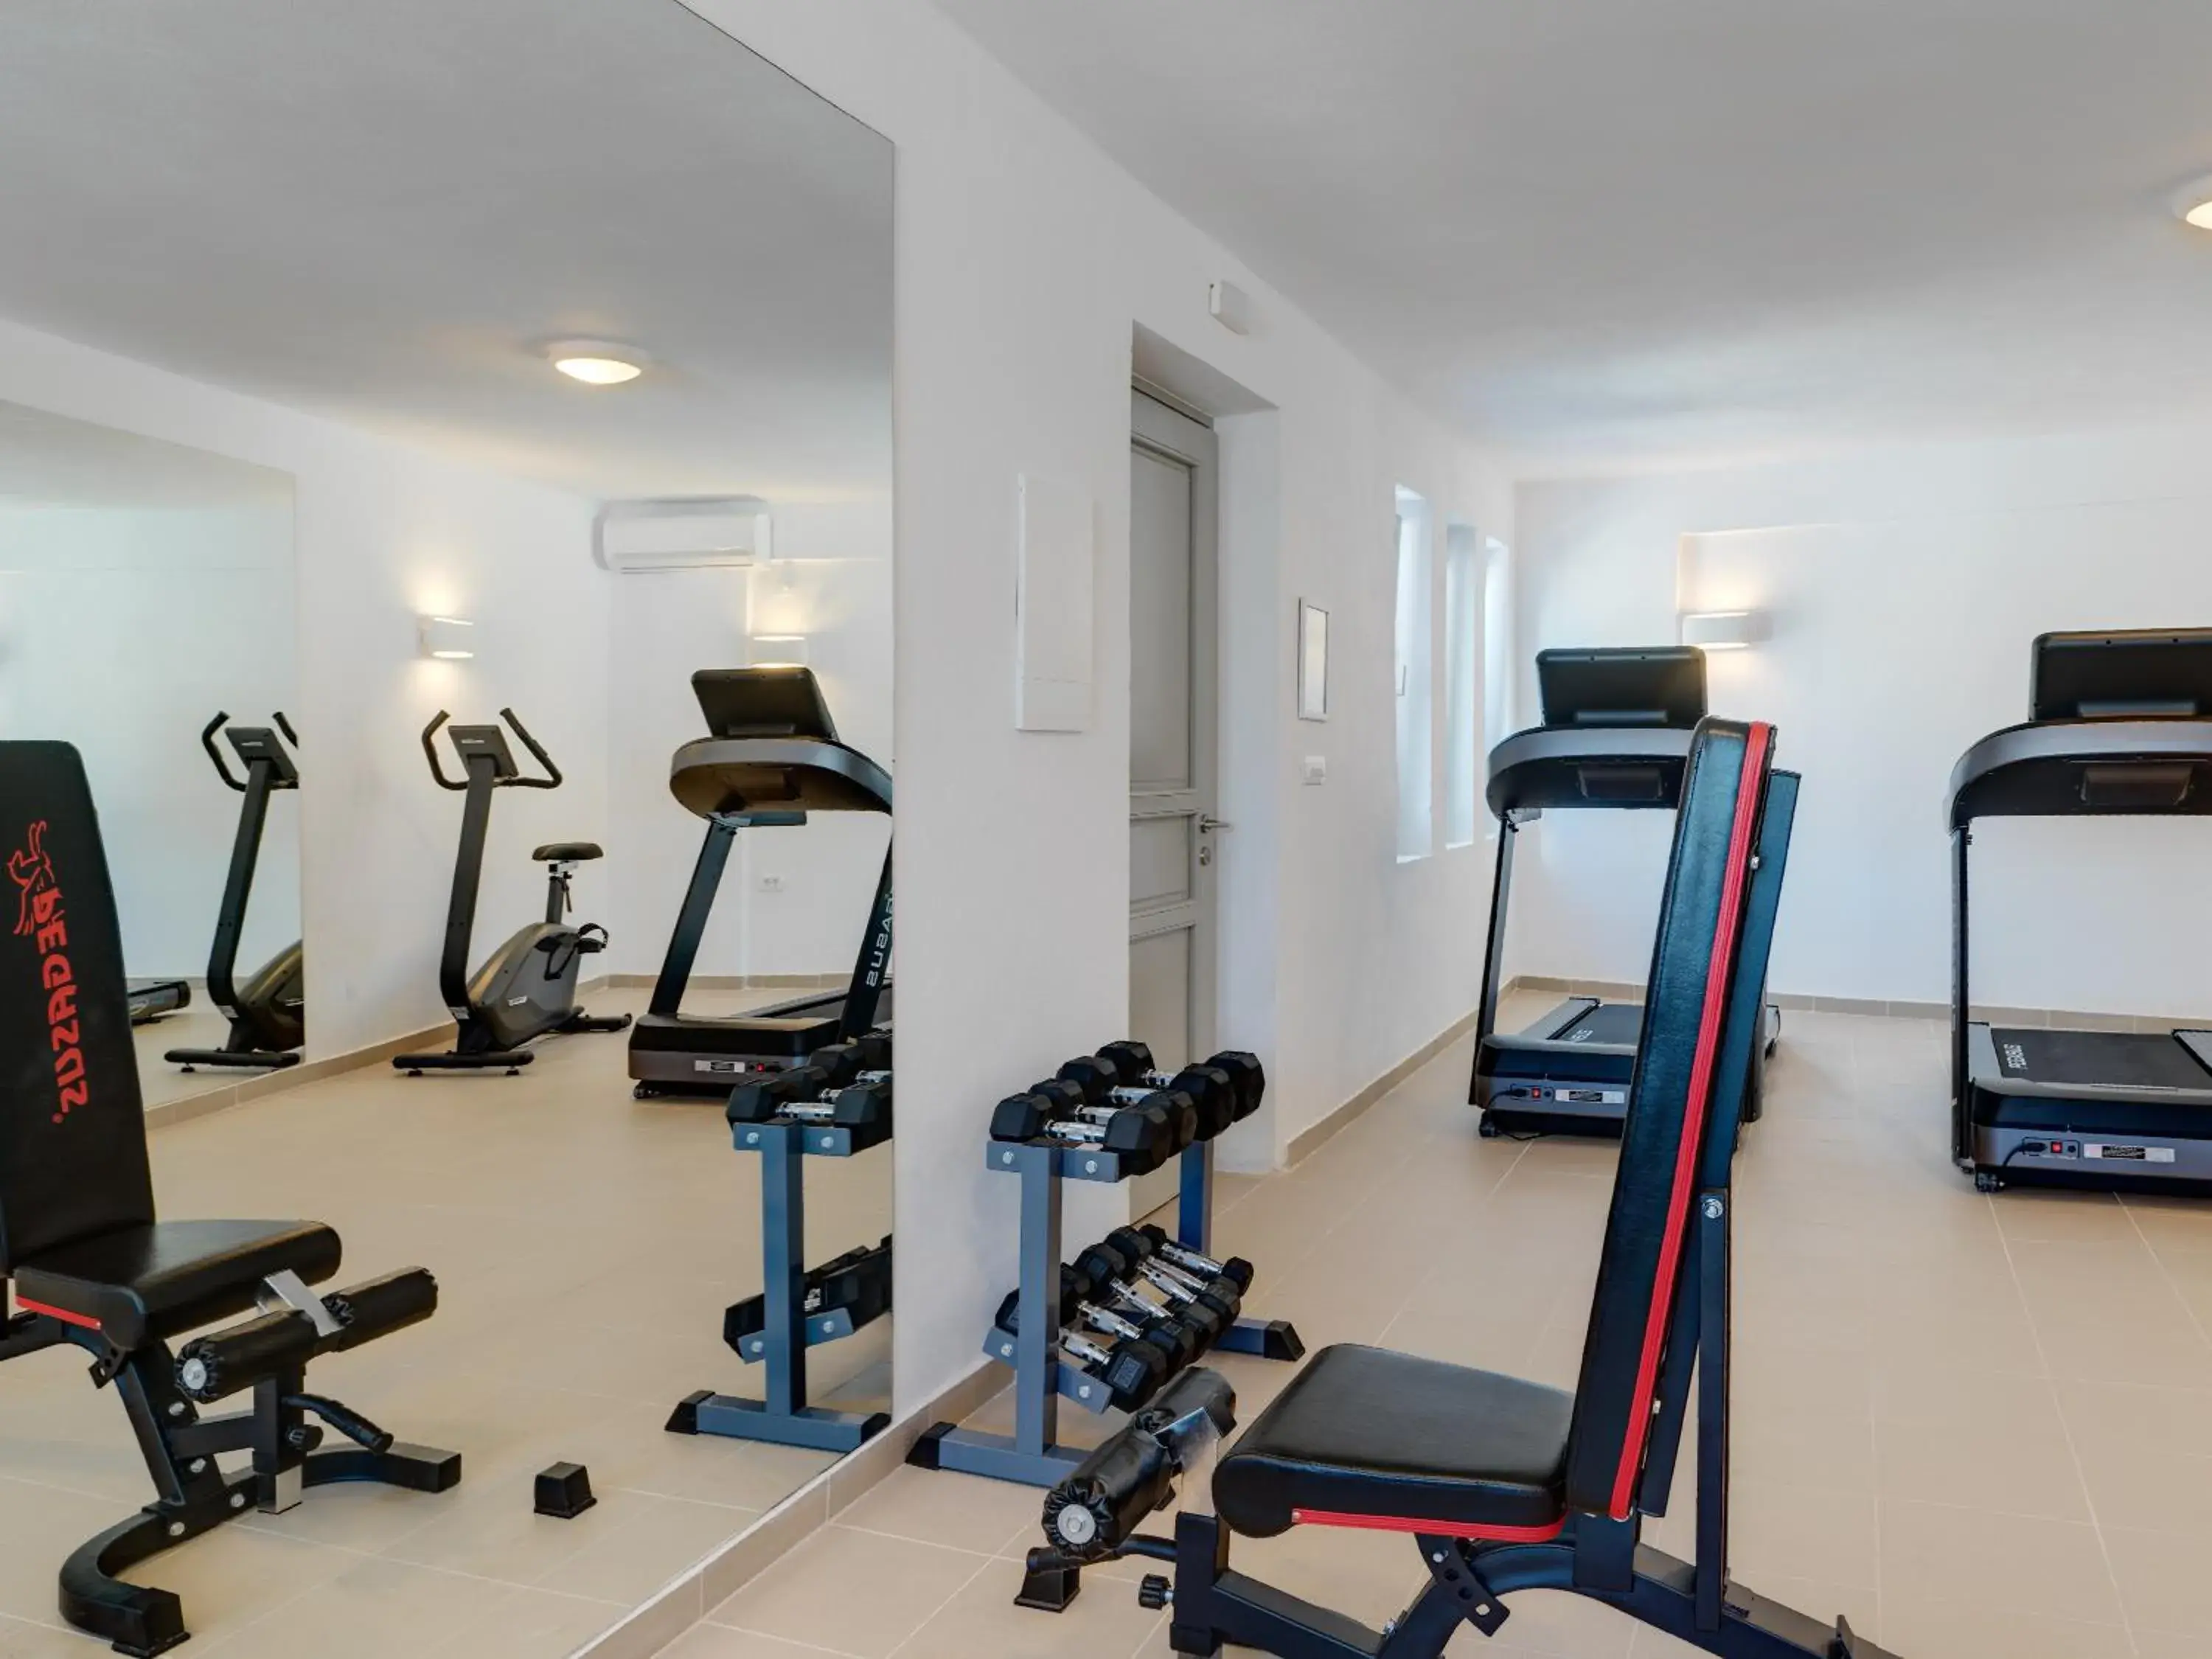 Fitness centre/facilities, Fitness Center/Facilities in Desiterra Resort